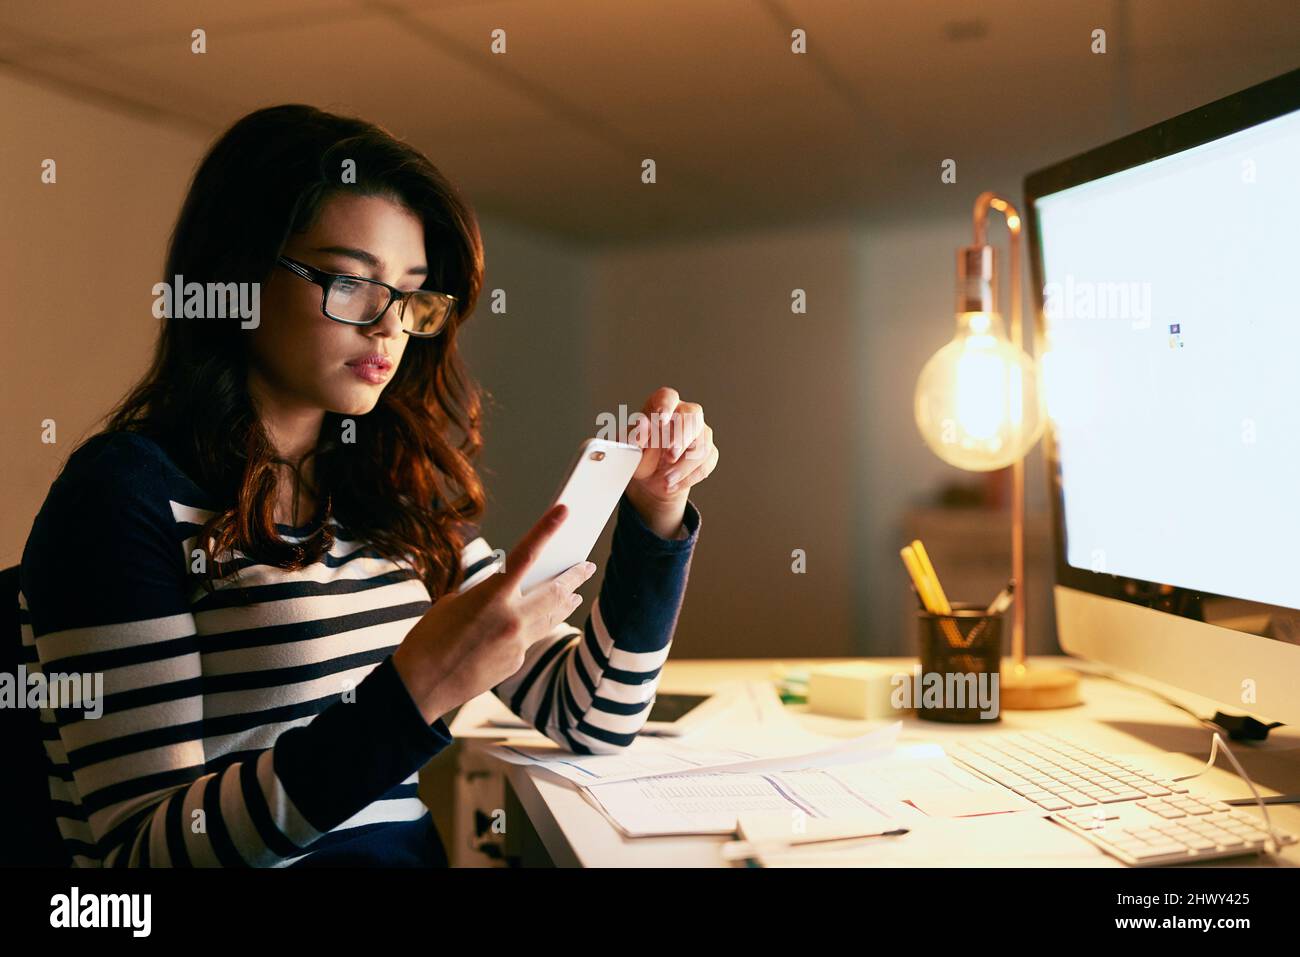 Non aspettarmi, mi sta lavorando tardi. Scatto di una giovane donna d'affari che texting sul suo cellulare mentre lavora tardi in un ufficio. Foto Stock